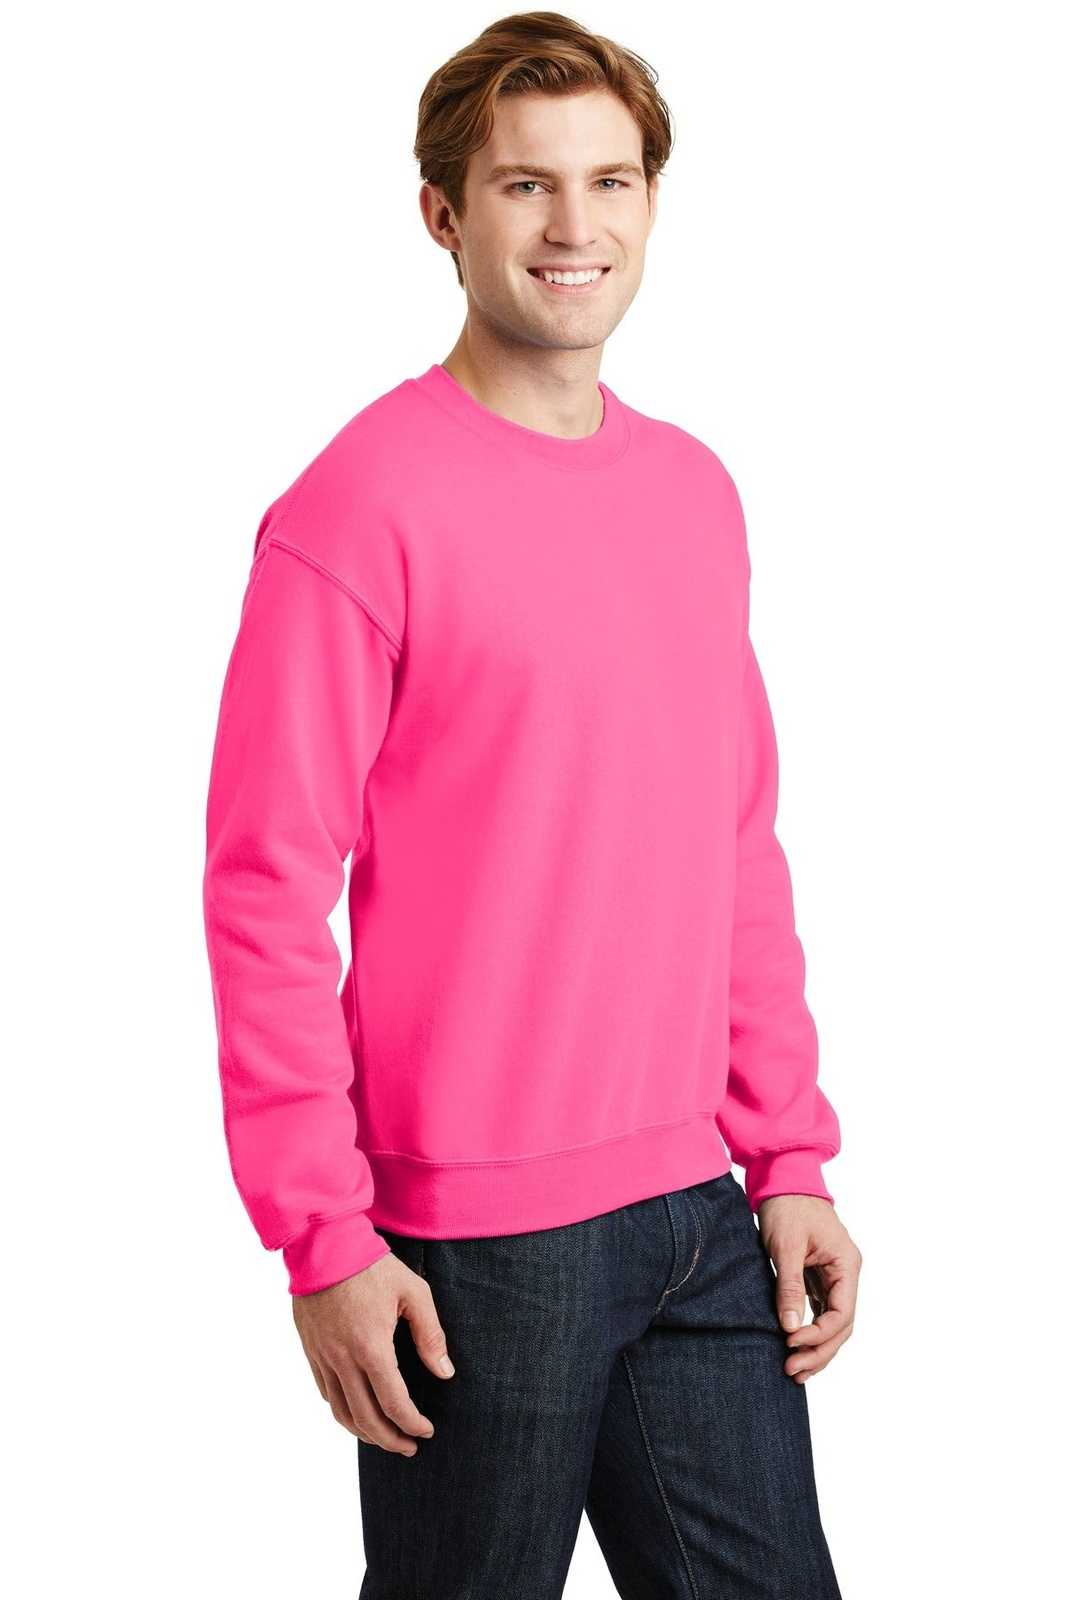 Gildan 18000 Heavy Blend Crewneck Sweatshirt - Safety Pink - HIT a Double